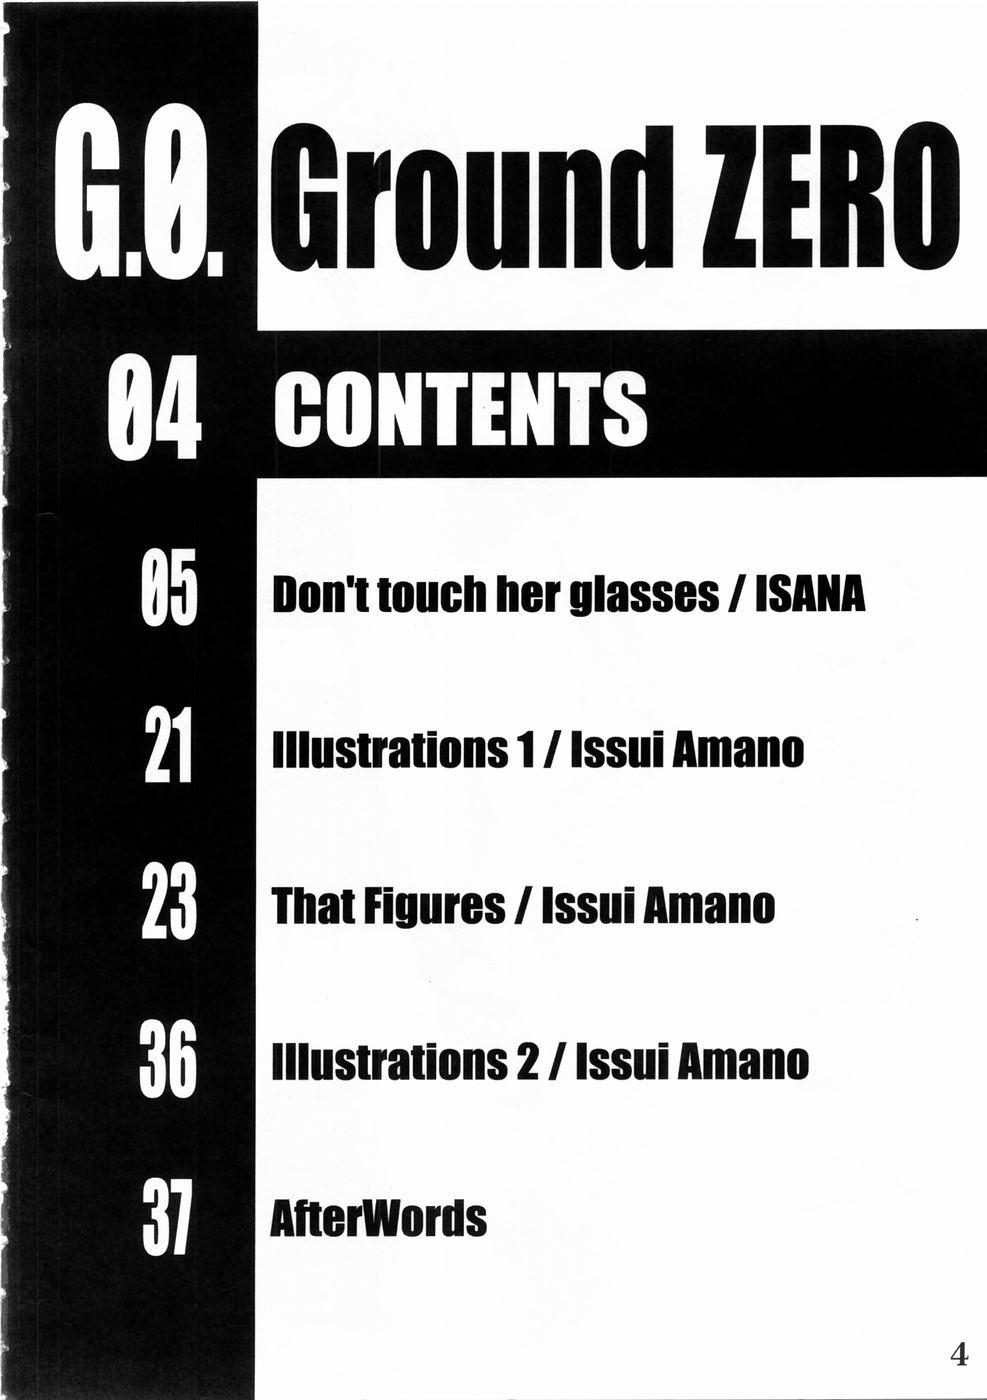 GROUND ZERO 2